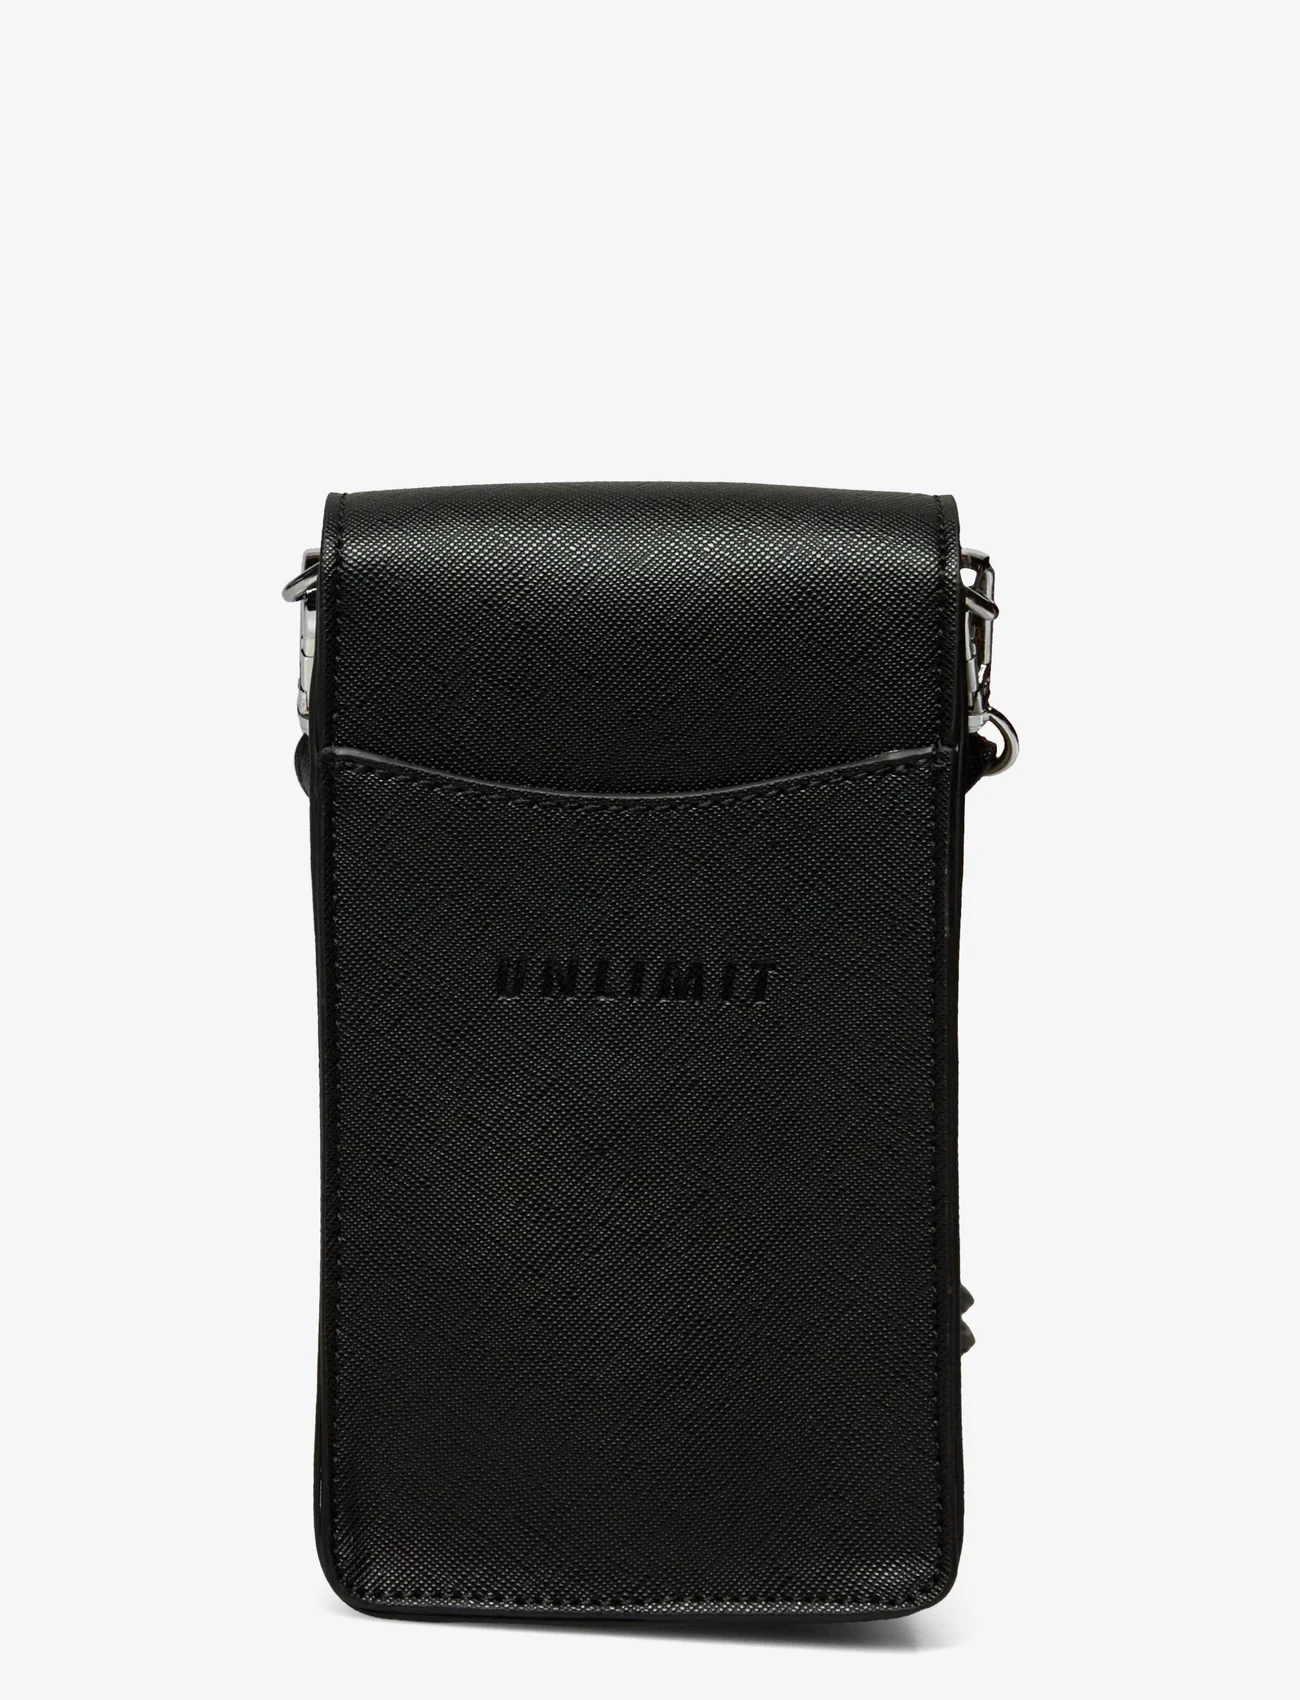 Unlimit - Unlimit mobile bag Faye - black - 1